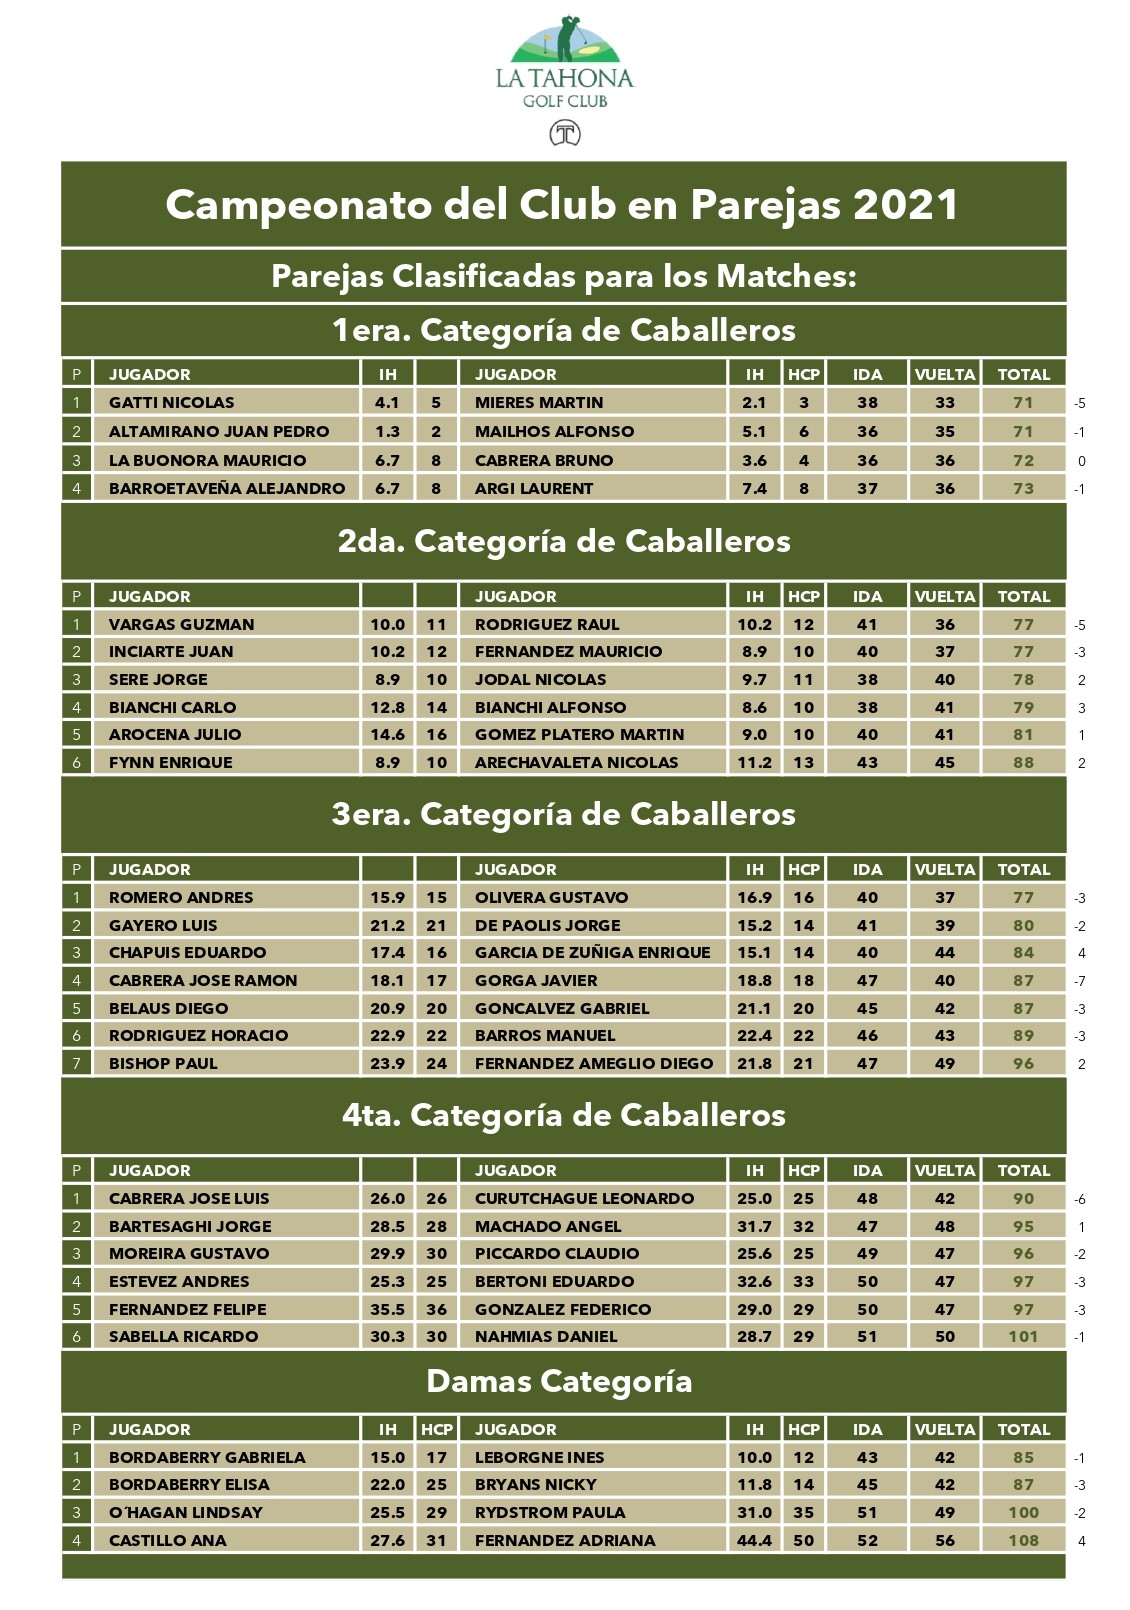 Campeonato del Club en Parejas_ estos son las parejas clasificadas por categora.